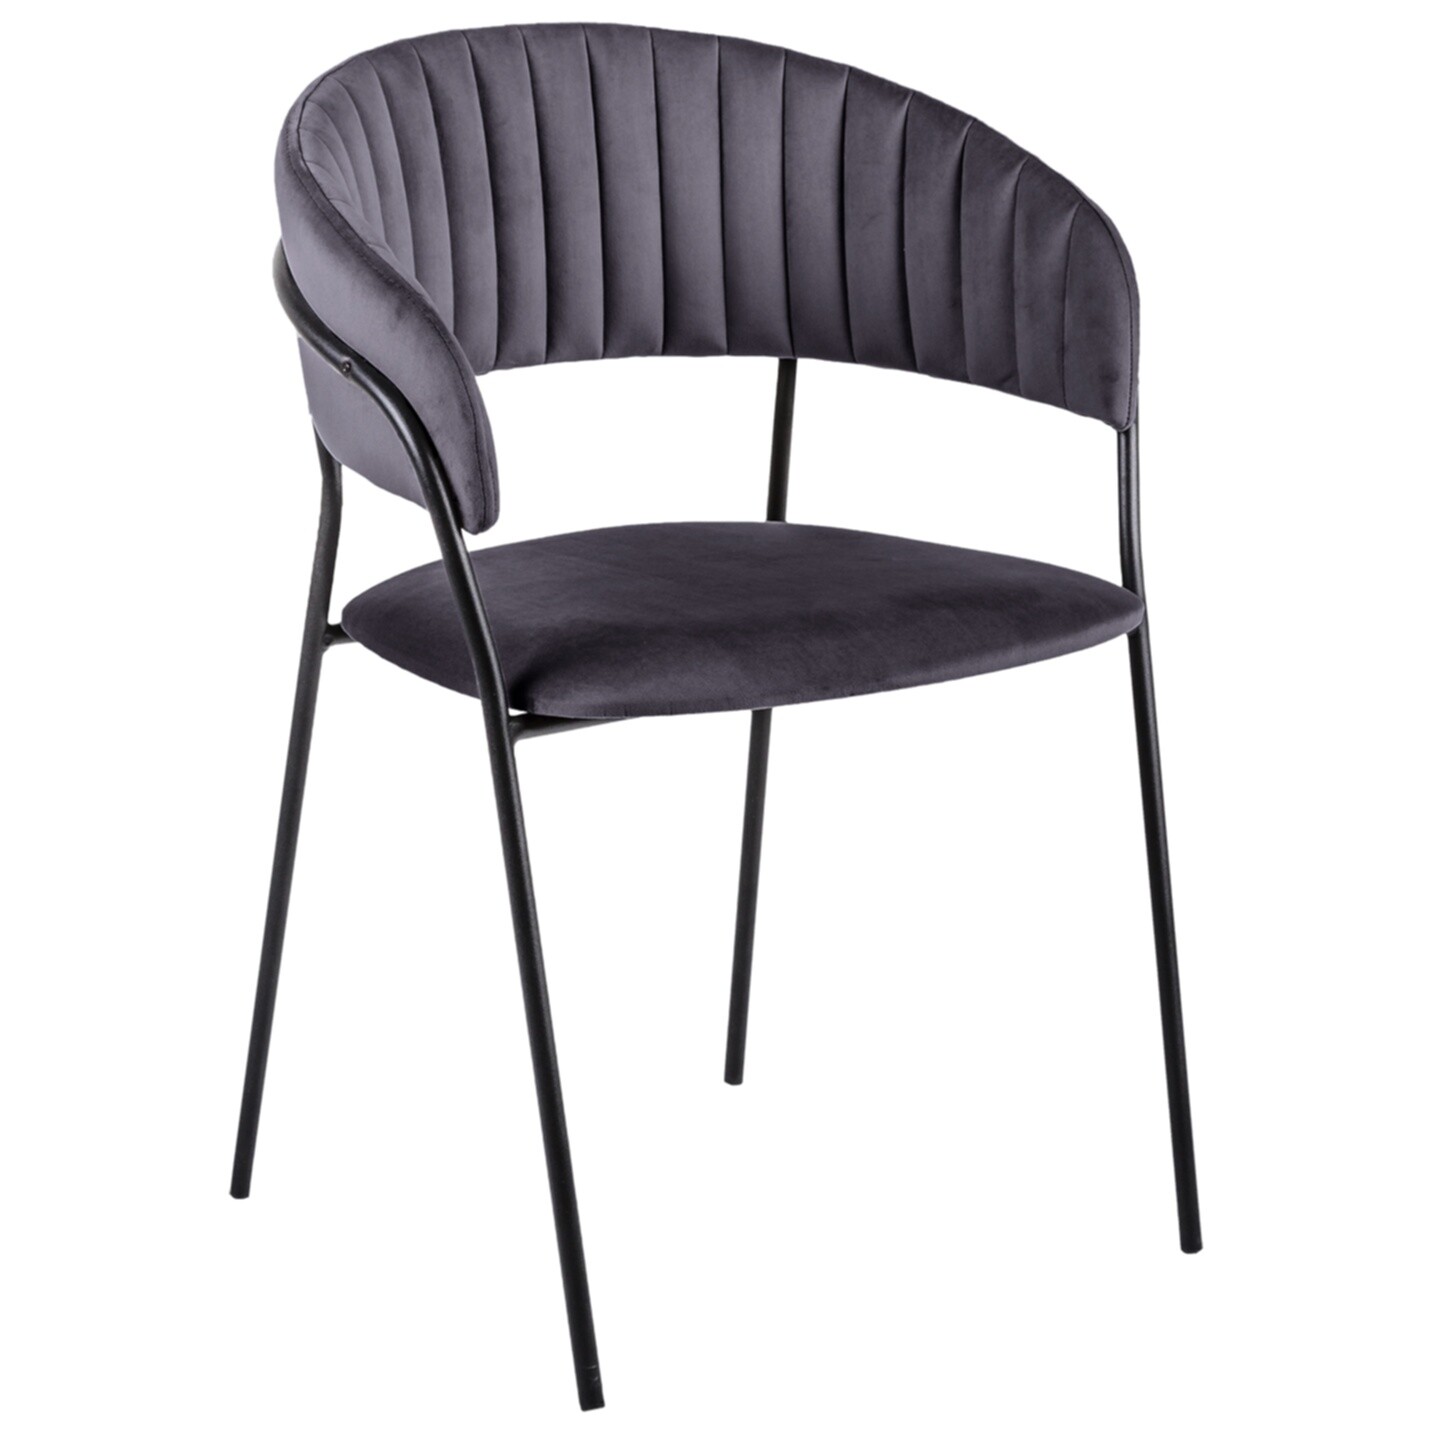 Кресло мягкое с металлическими ножками серое Portman Grey